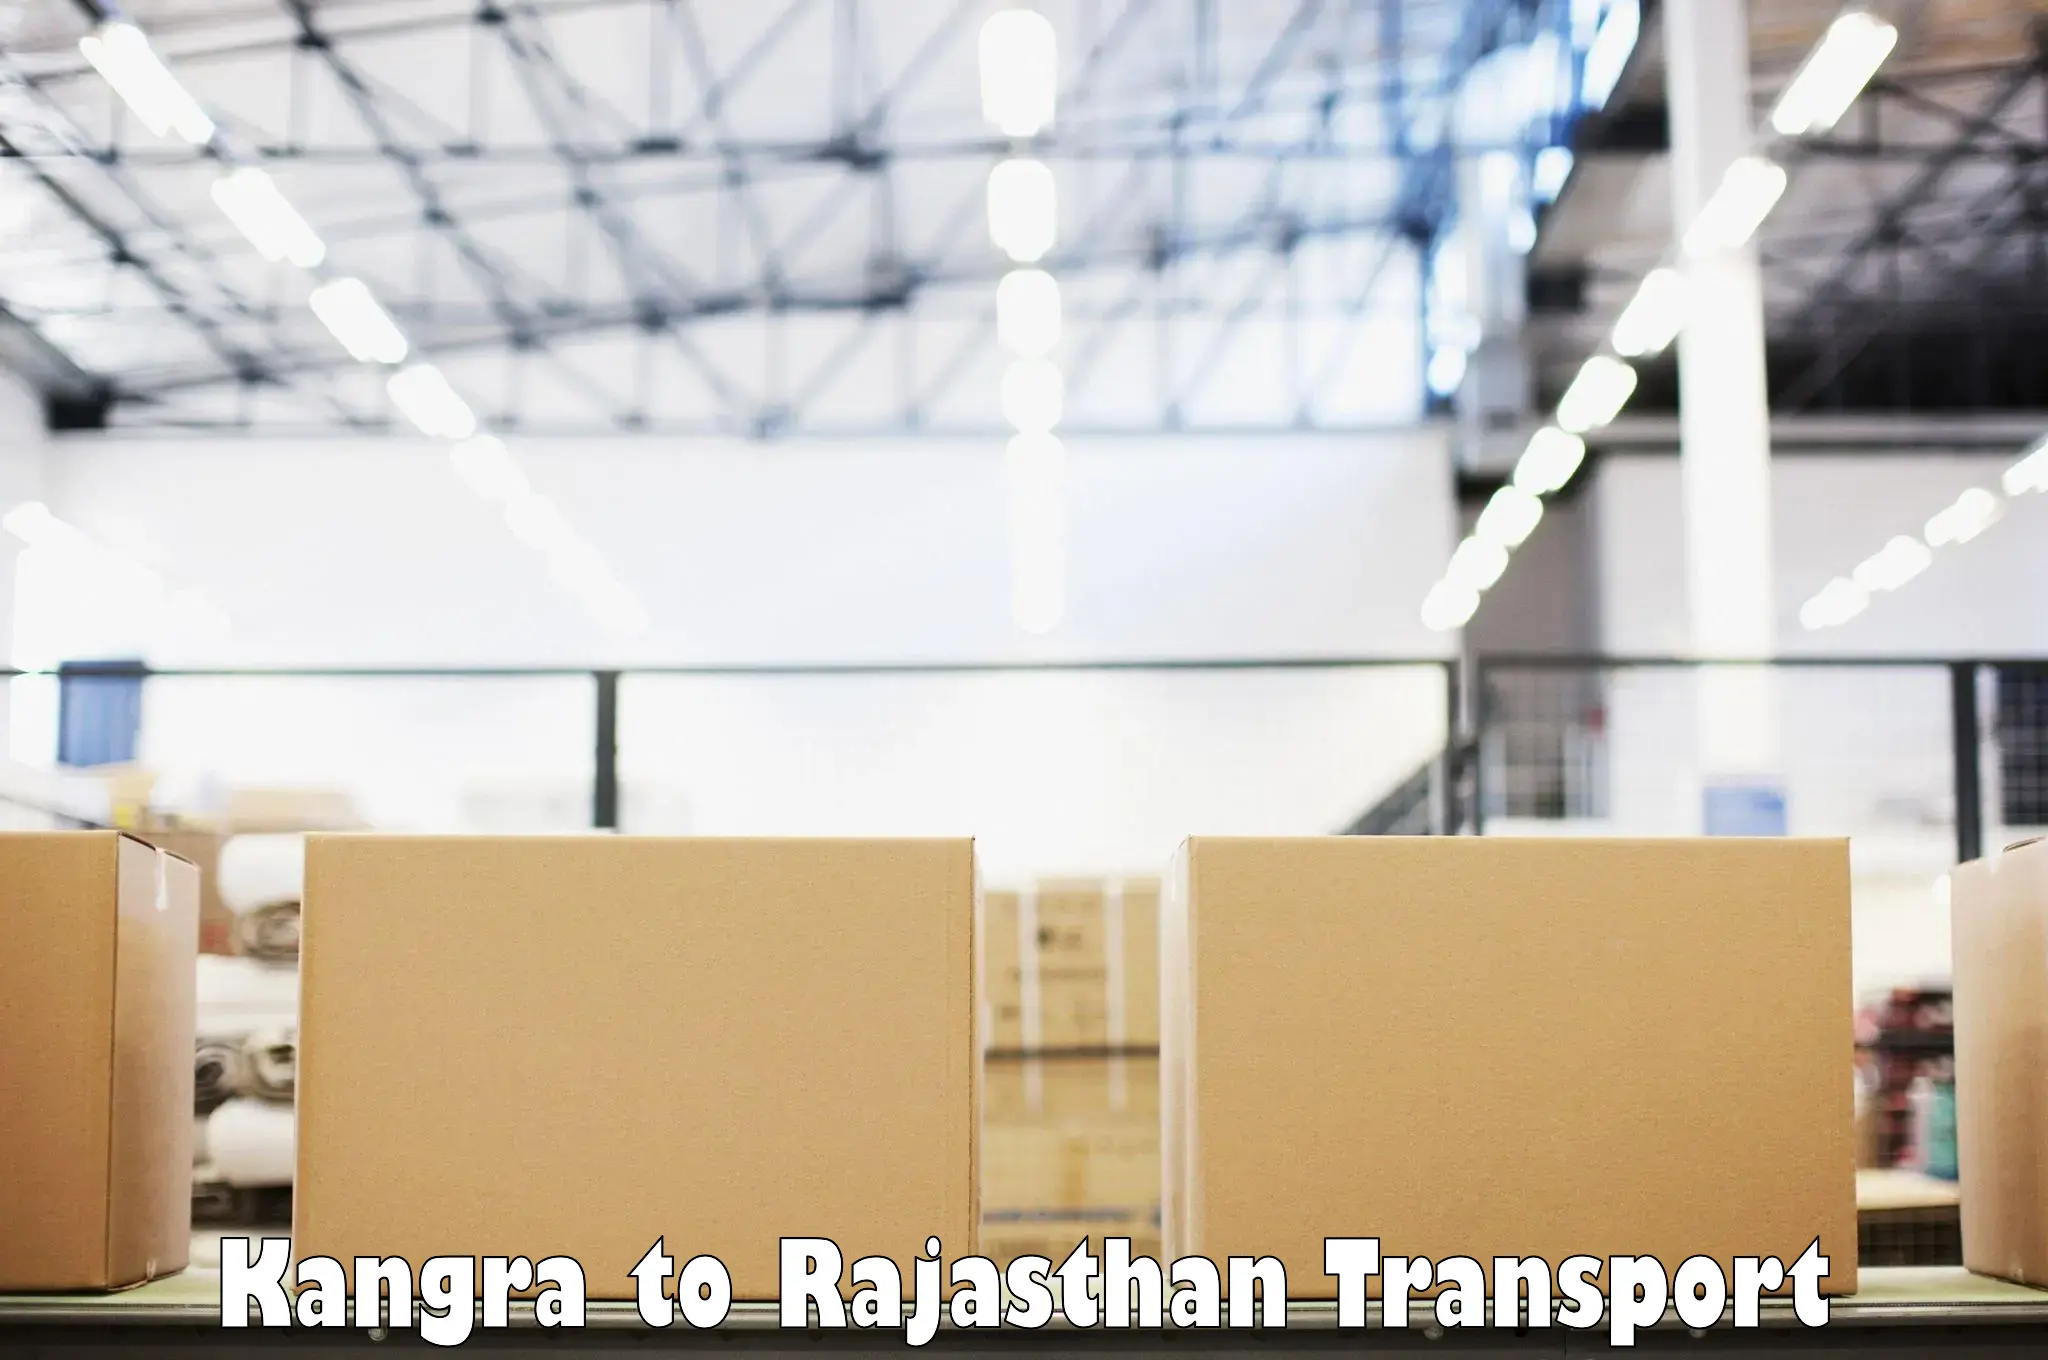 Daily transport service Kangra to Gudha Gorji